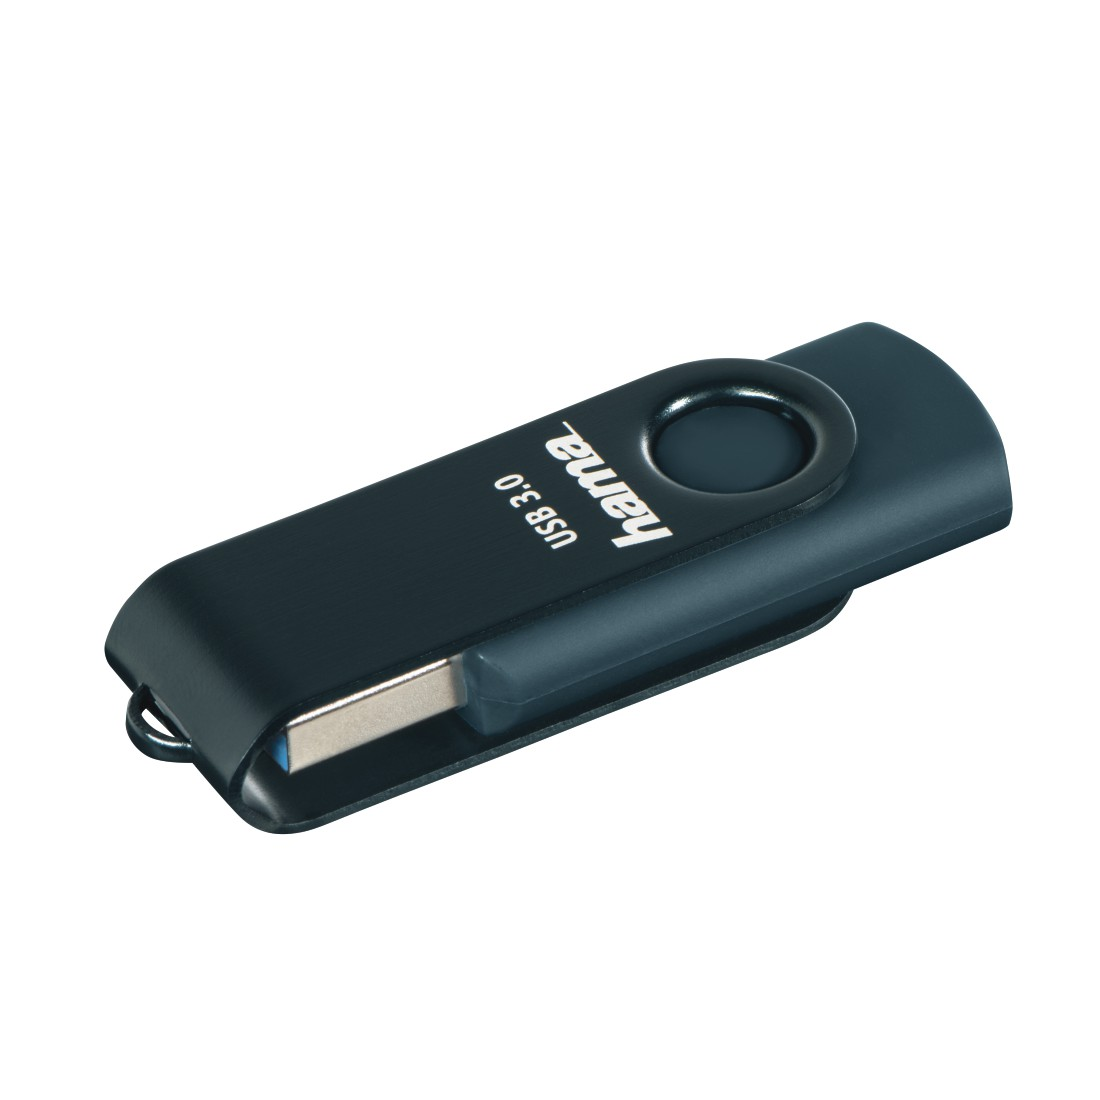 HAMA Rotate USB-Stick, 256 GB, MB/s, Petrol Blau 90